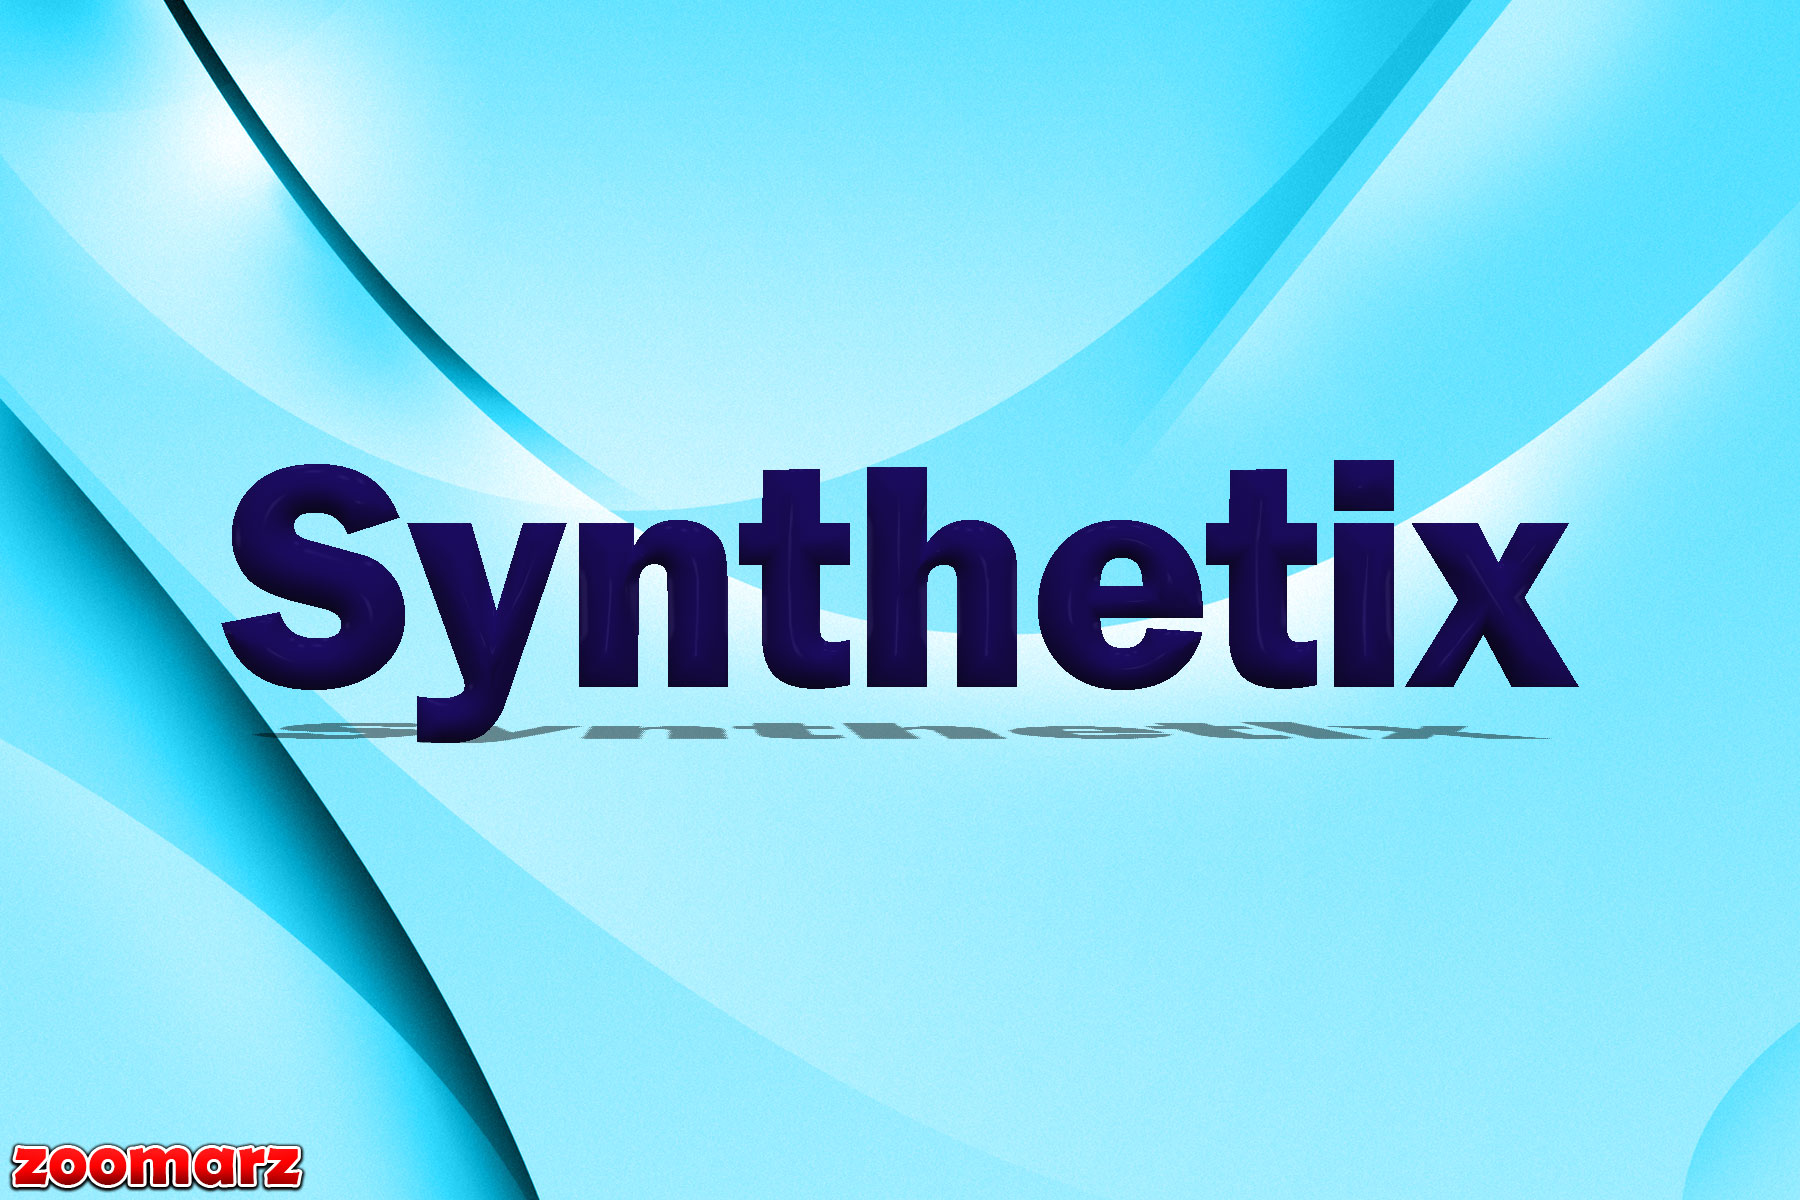 Ø±ÙˆÙ†Ø¯ ØµØ¹ÙˆØ¯ÛŒ Û¶Û° Ø¯Ø±ØµØ¯ÛŒ Synthetix (SNX) Ø¯Ø± Û³Û° Ø±ÙˆØ² Ú¯Ø°Ø´ØªÙ‡!ðŸŽ†